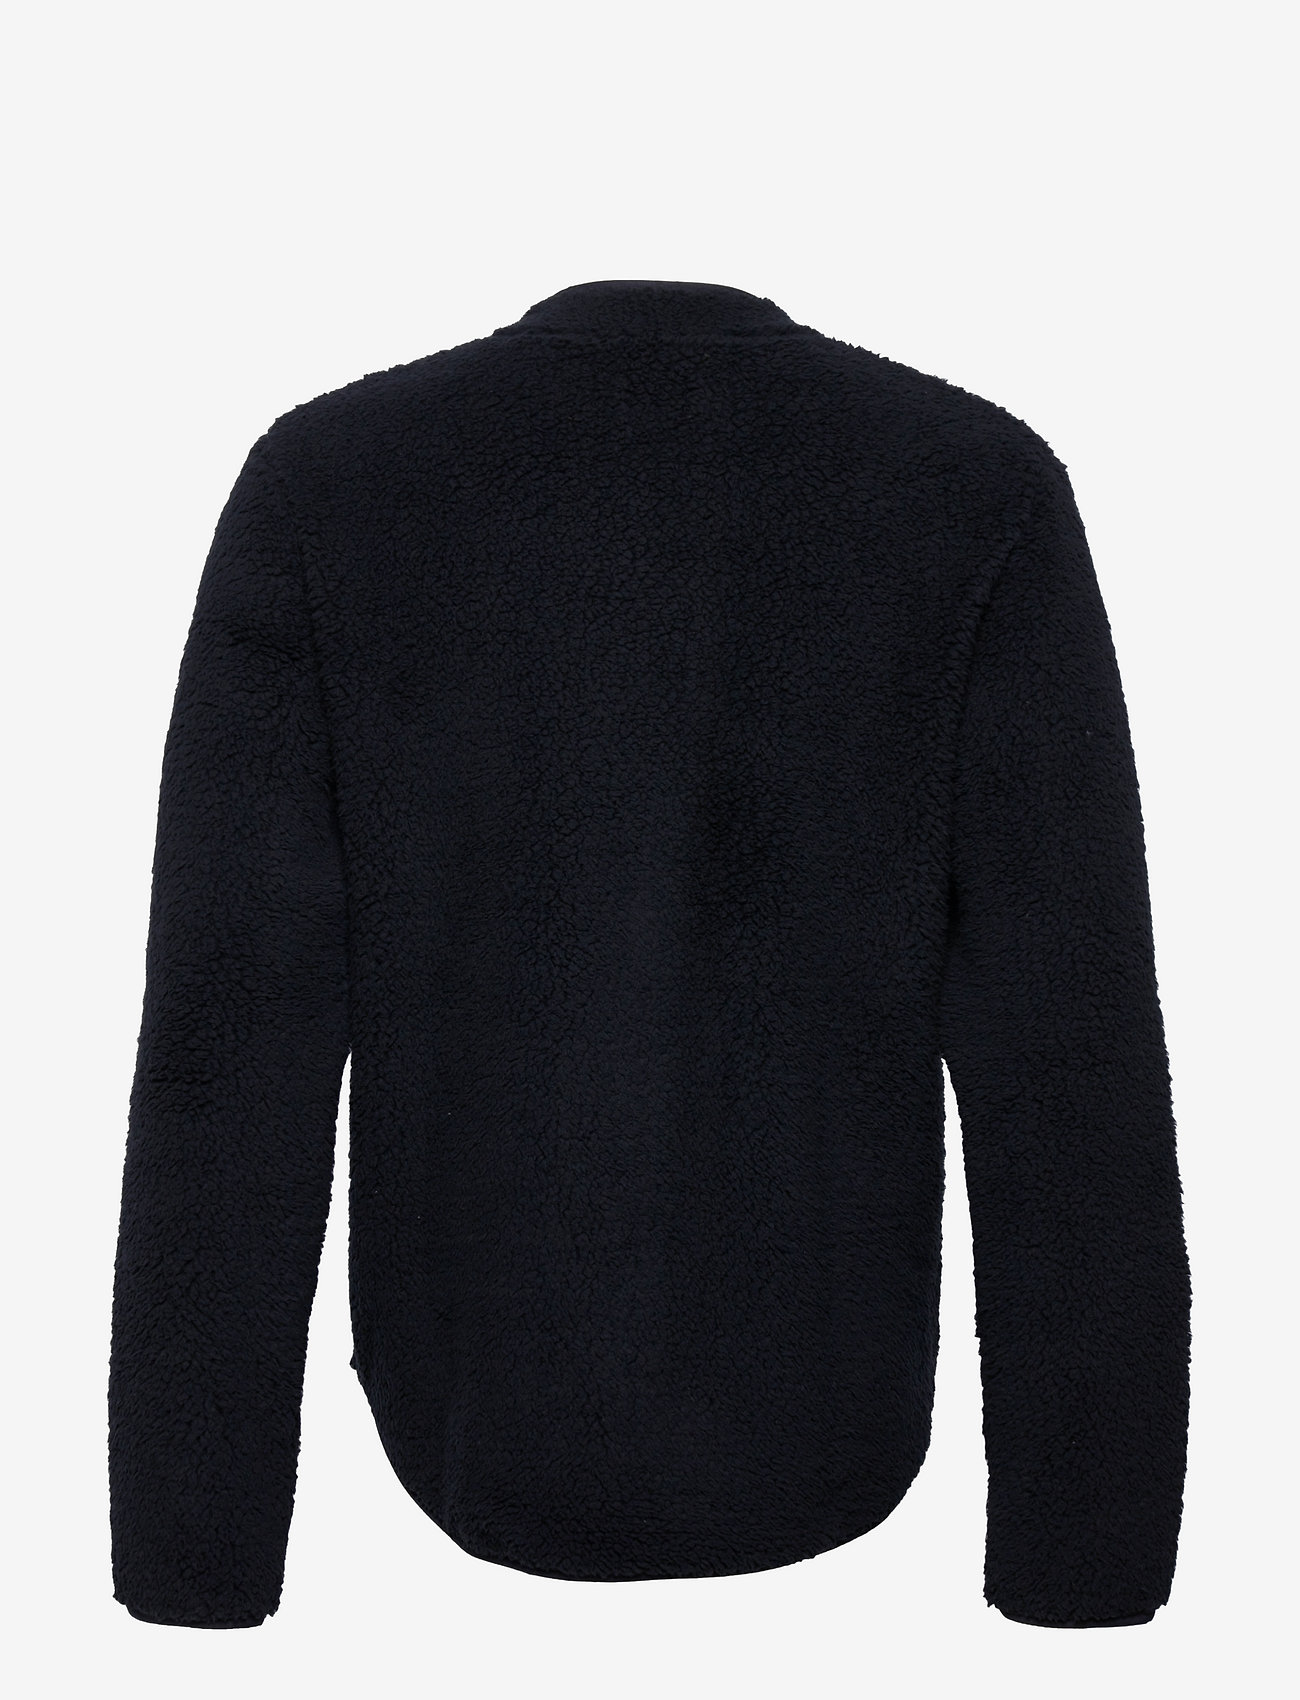 Resteröds - Original Fleece Jacket Recycle - truien en hoodies - svart - 1